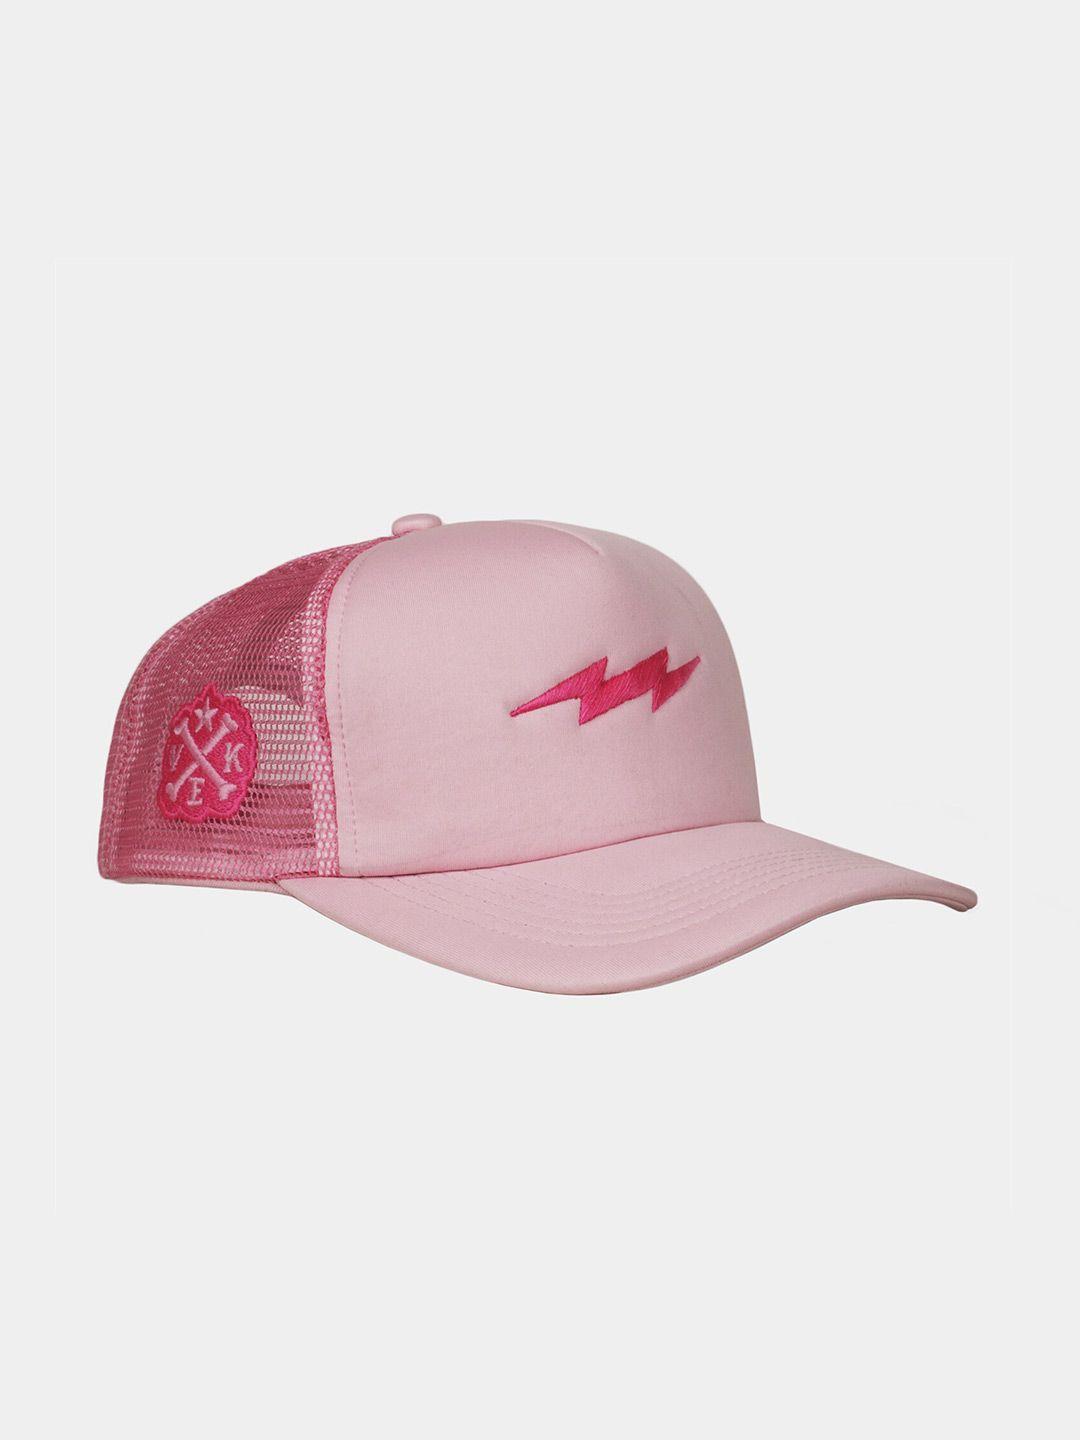 supervek unisex embroidered baseball cap